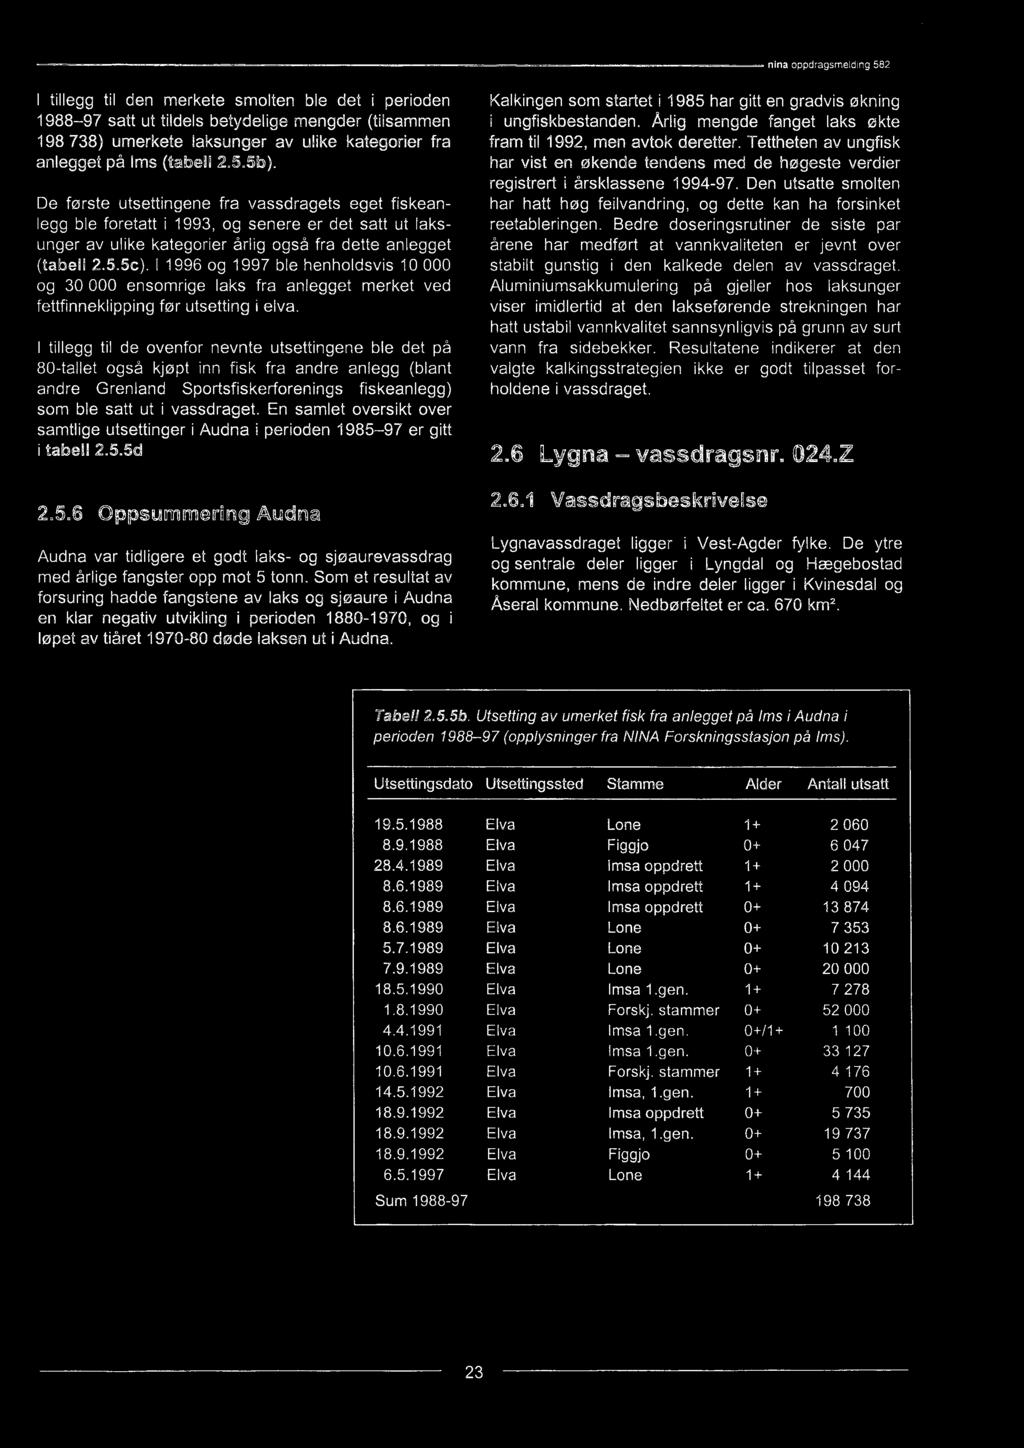 En samlet oversikt over samtlige utsettinger i Audna i perioden 1985-97 er gitt i tabell 2.5.5d 2.5.6 Oppsummering Audna Audna var tidligere et godt laks- og sjøaurevassdrag med årlige fangster opp mot 5 tonn.